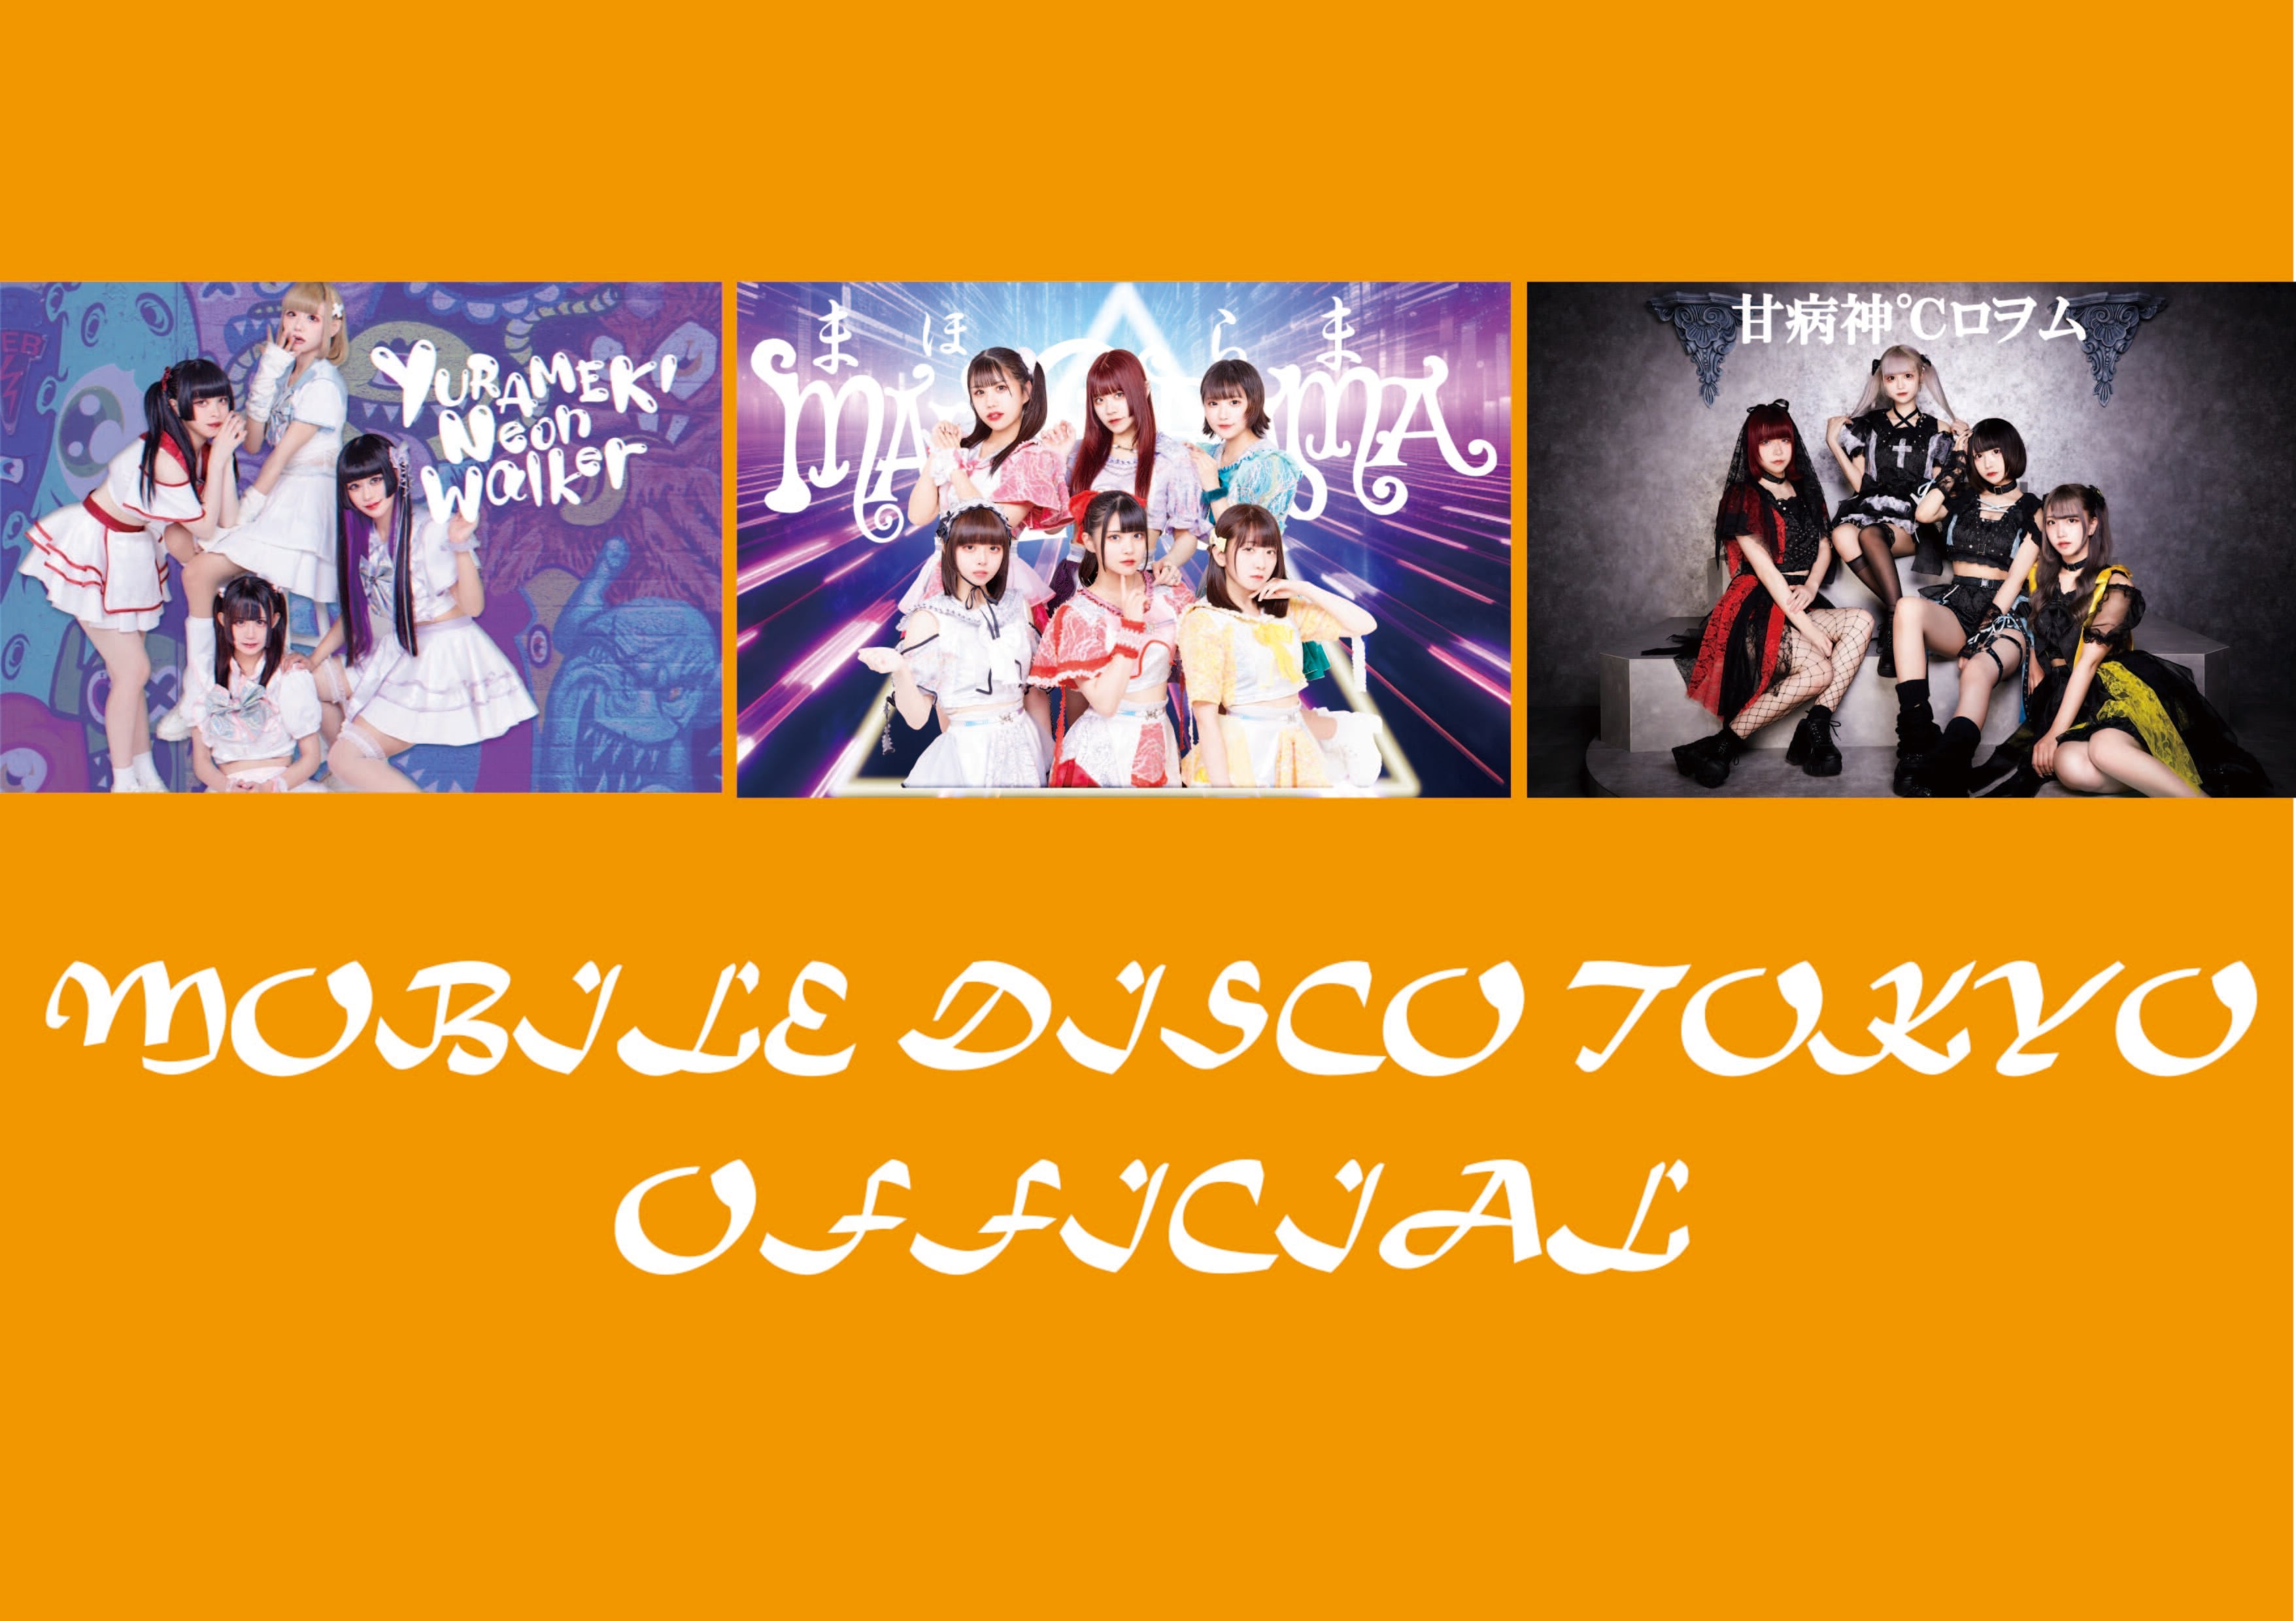 Mobile Disco Tokyo Official Shop